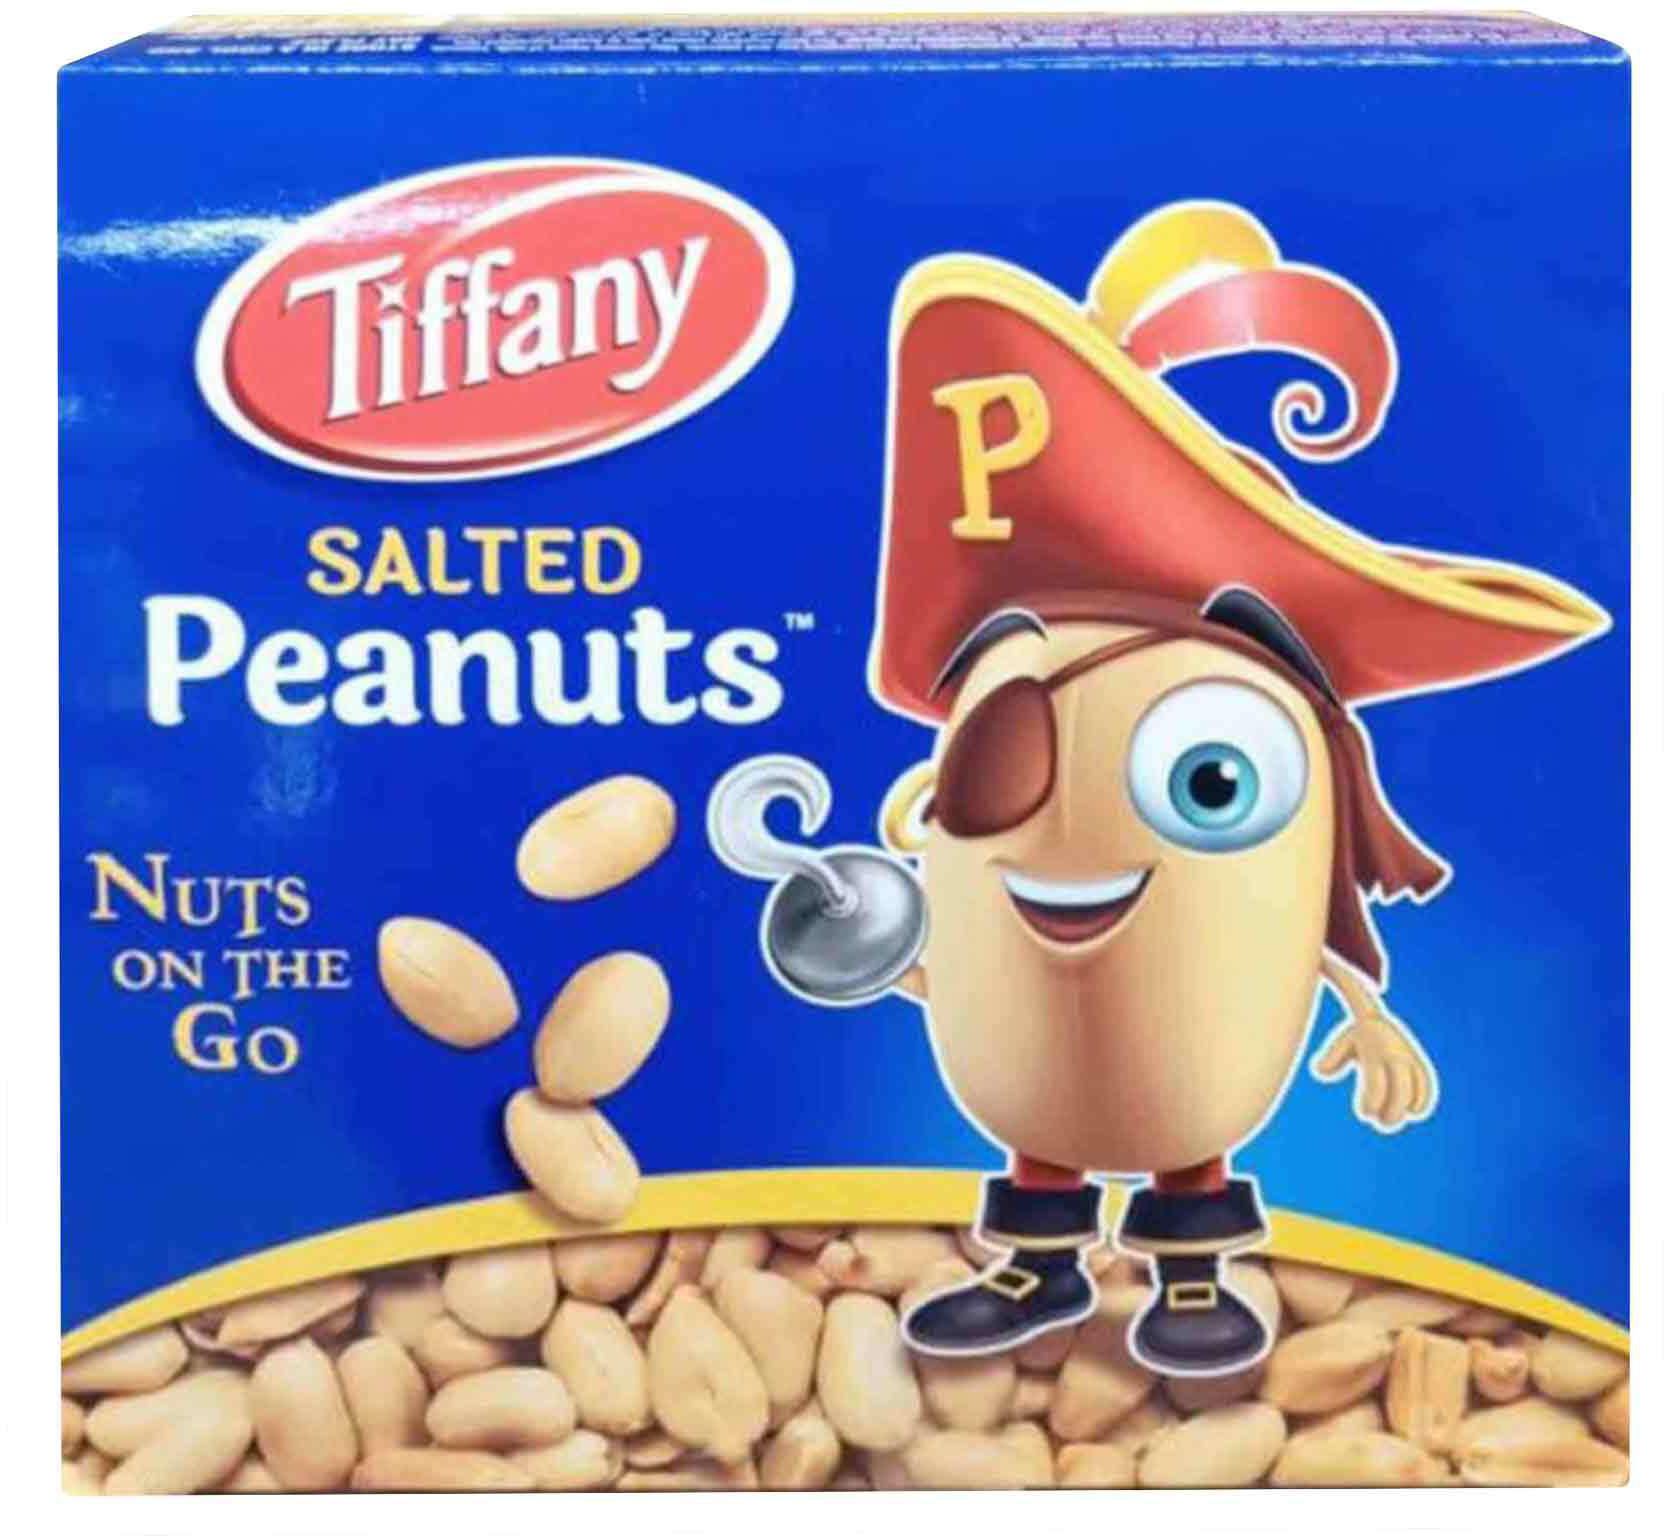 Tiffany salted peanuts 13g